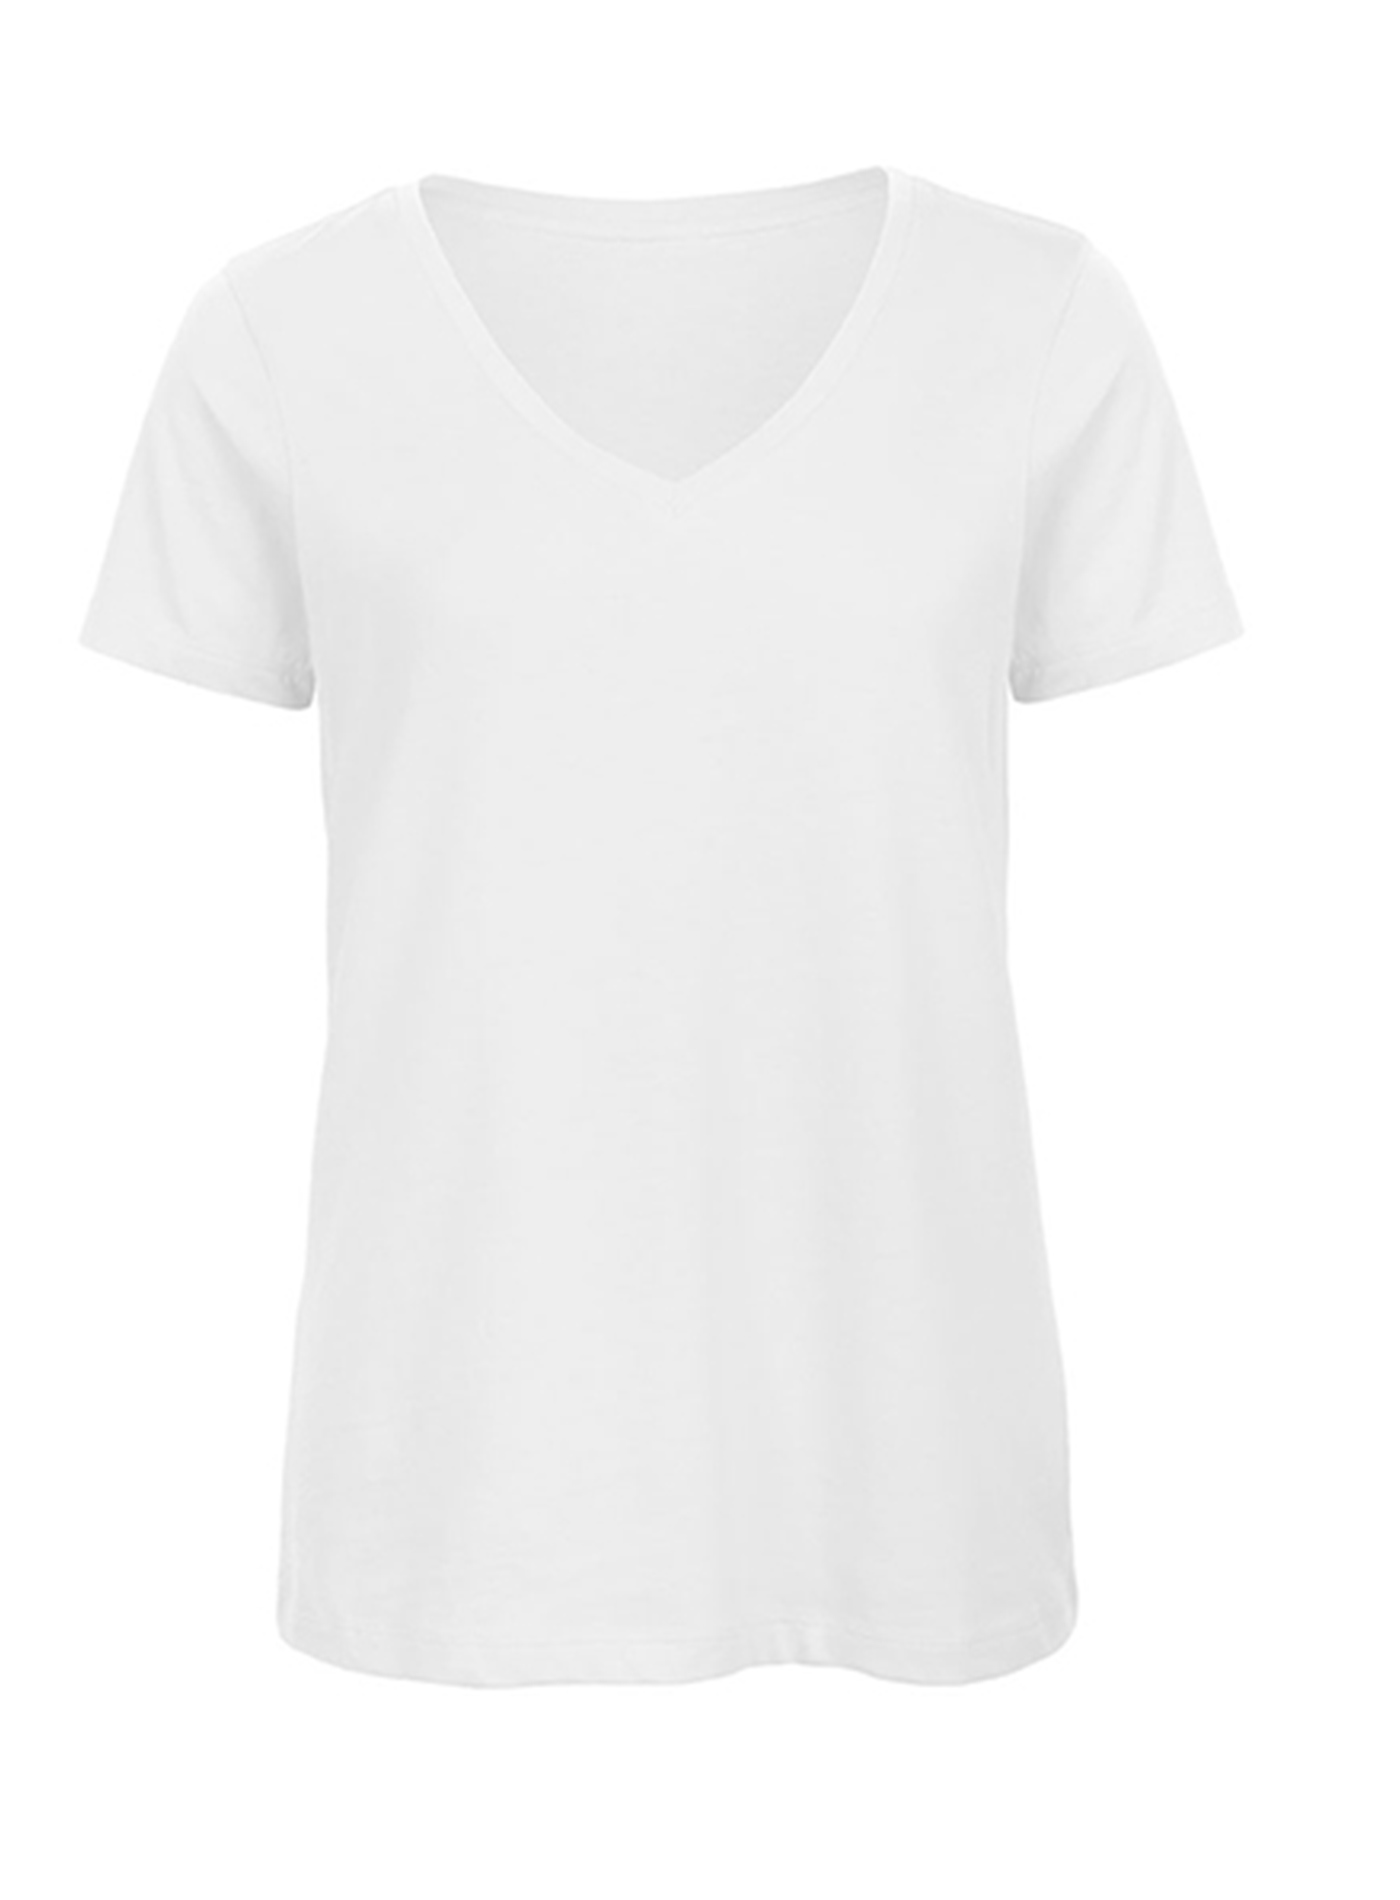 Dámské tričko s výstřihem do V B&C Collection Inspire - Bílá XL